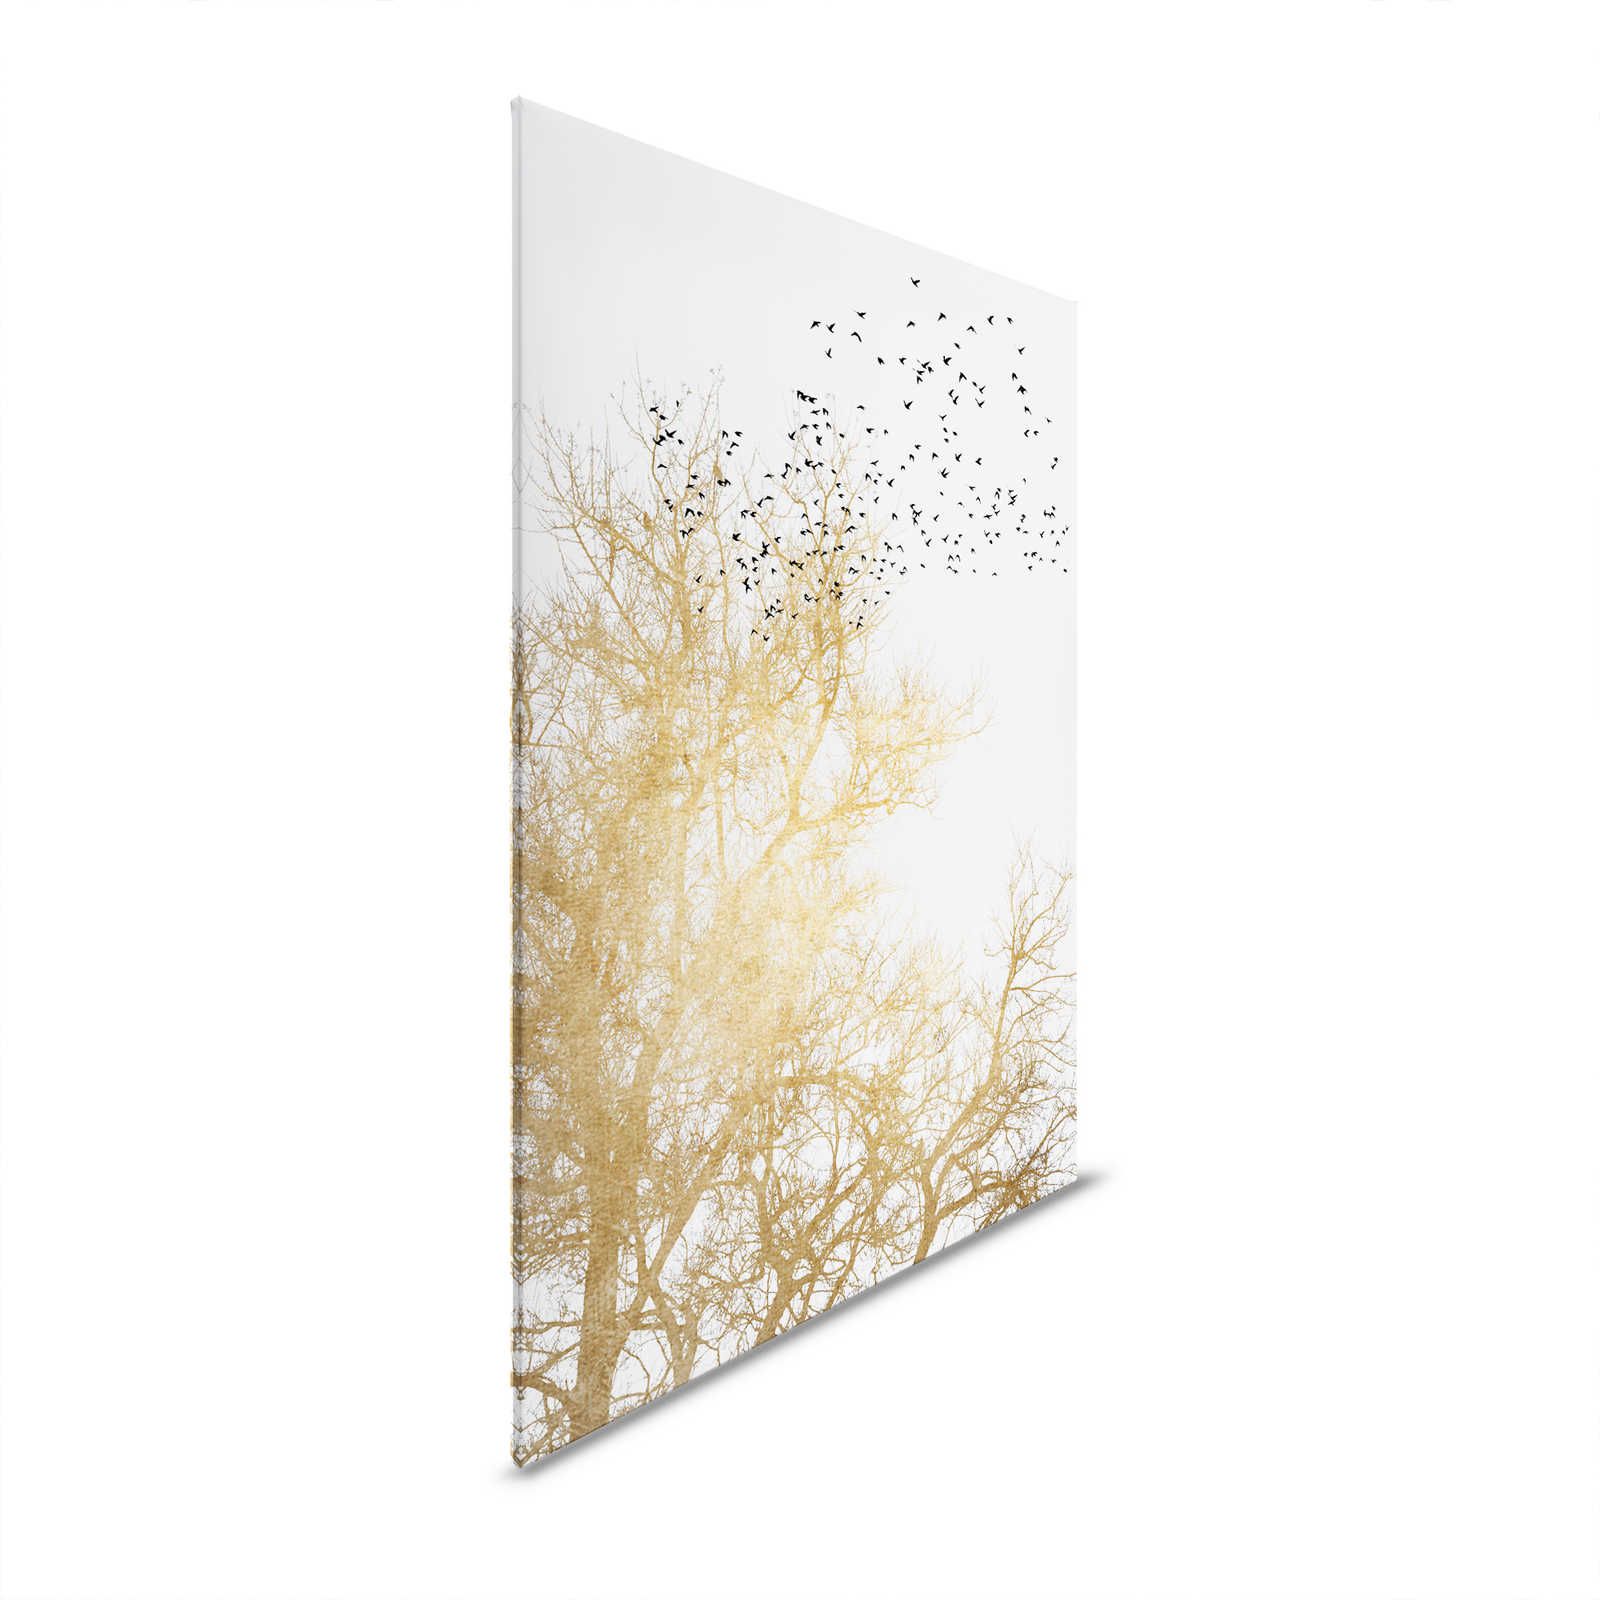 Cuadro en lienzo con árboles dorados y bandada de pájaros - 0,90 m x 0,60 m
